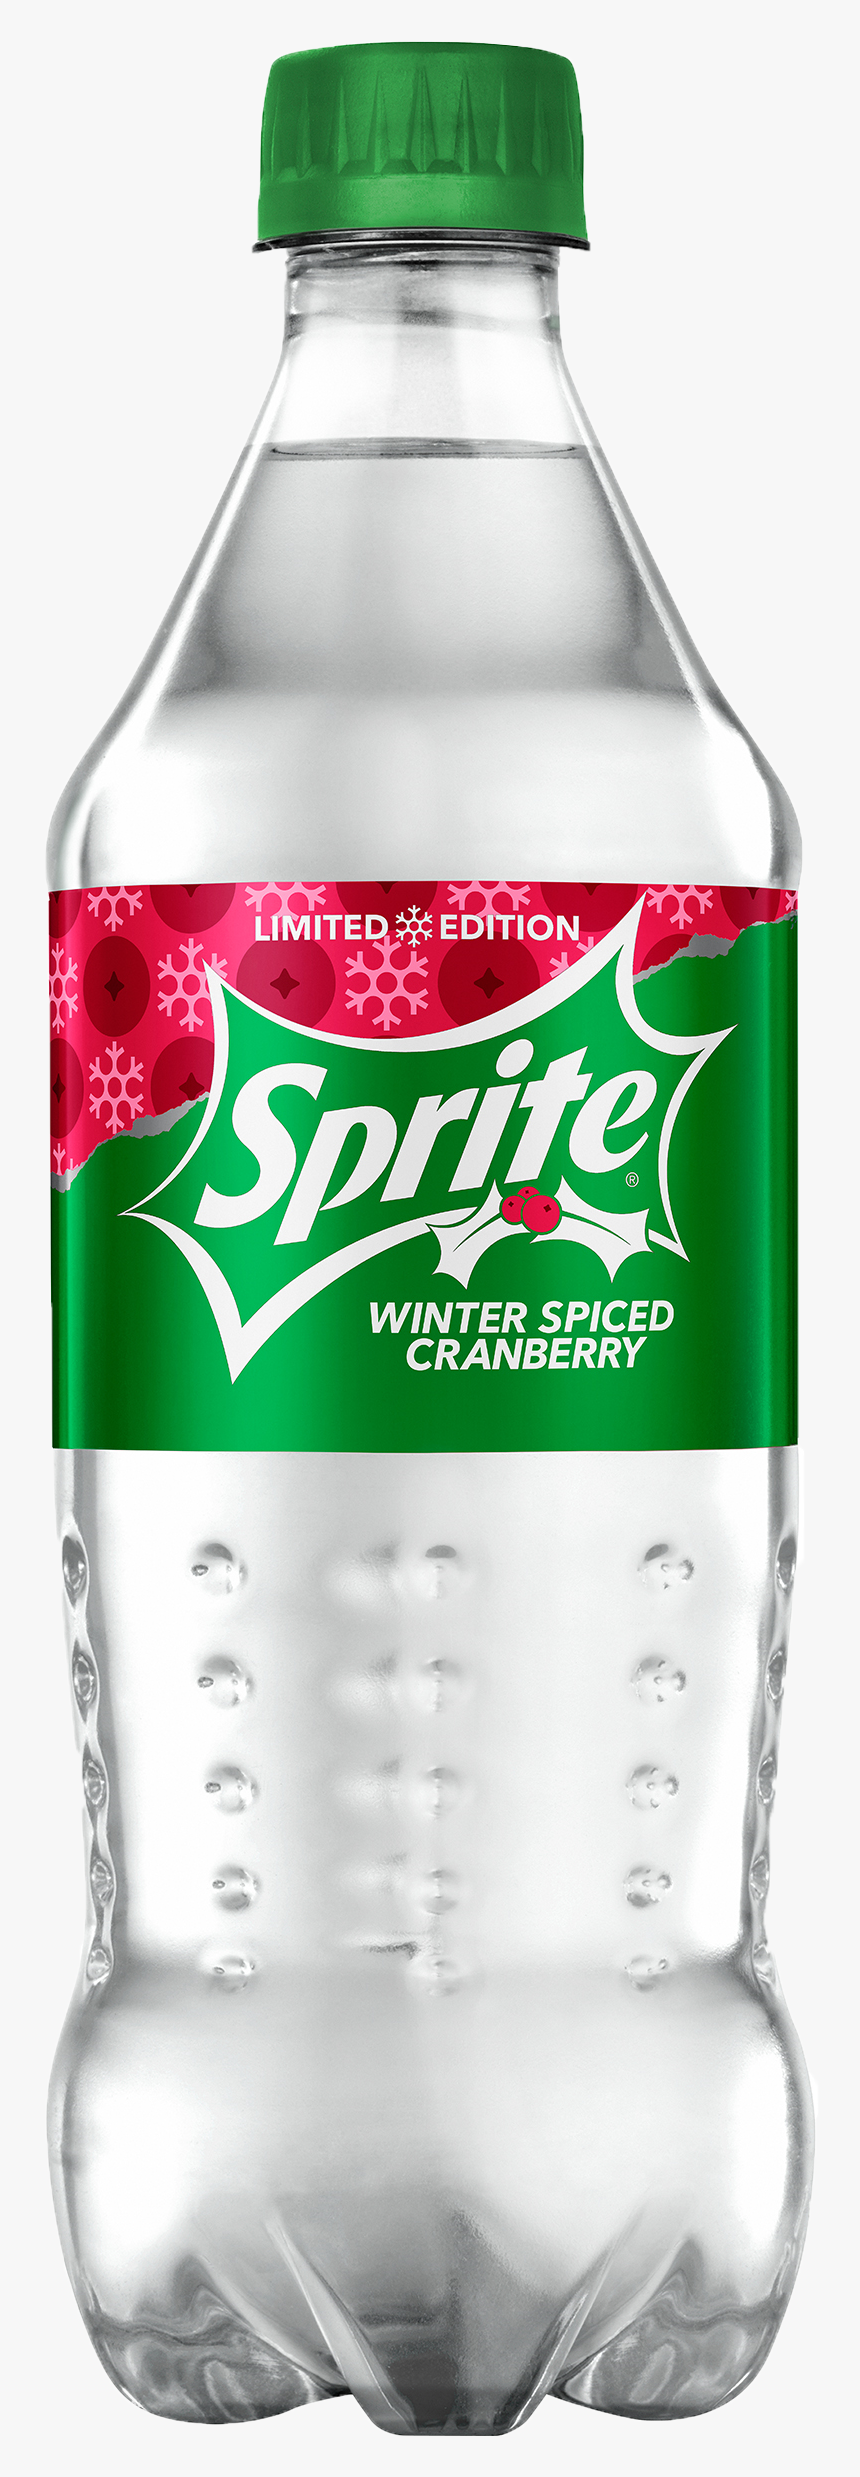 20oz Spiced Cran - Sprite Winter Spiced Cranberry